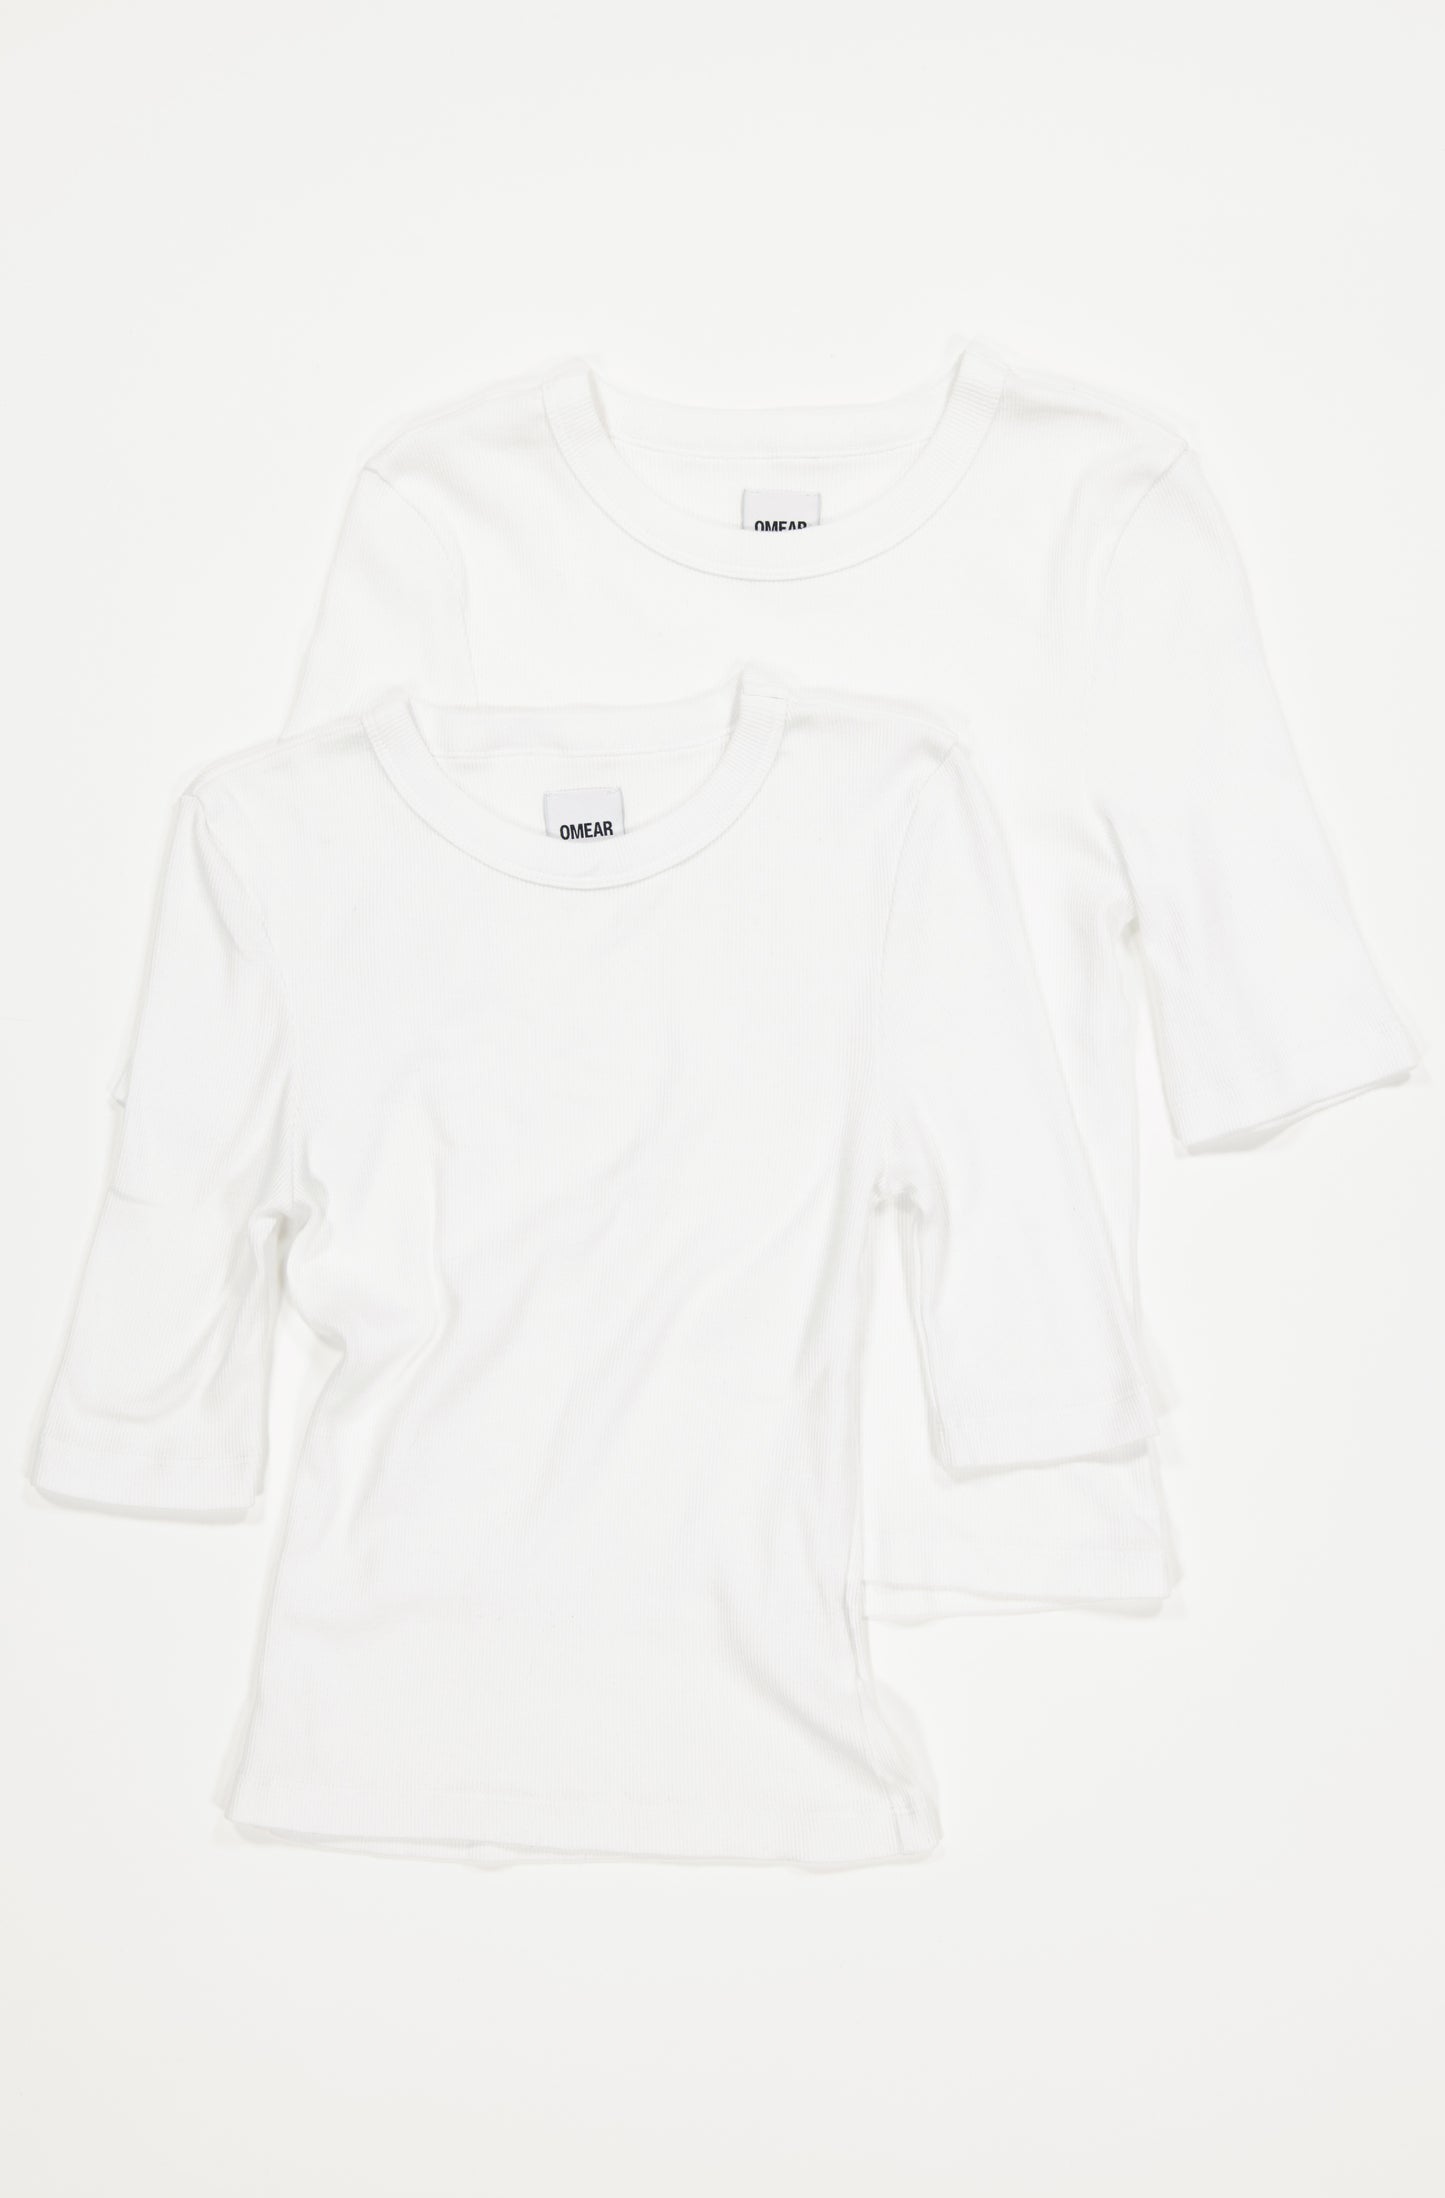 Le lot de 2 t-shirts à manches trois-quarts en coton côtelé bio pour femme OMEAR, en blanc